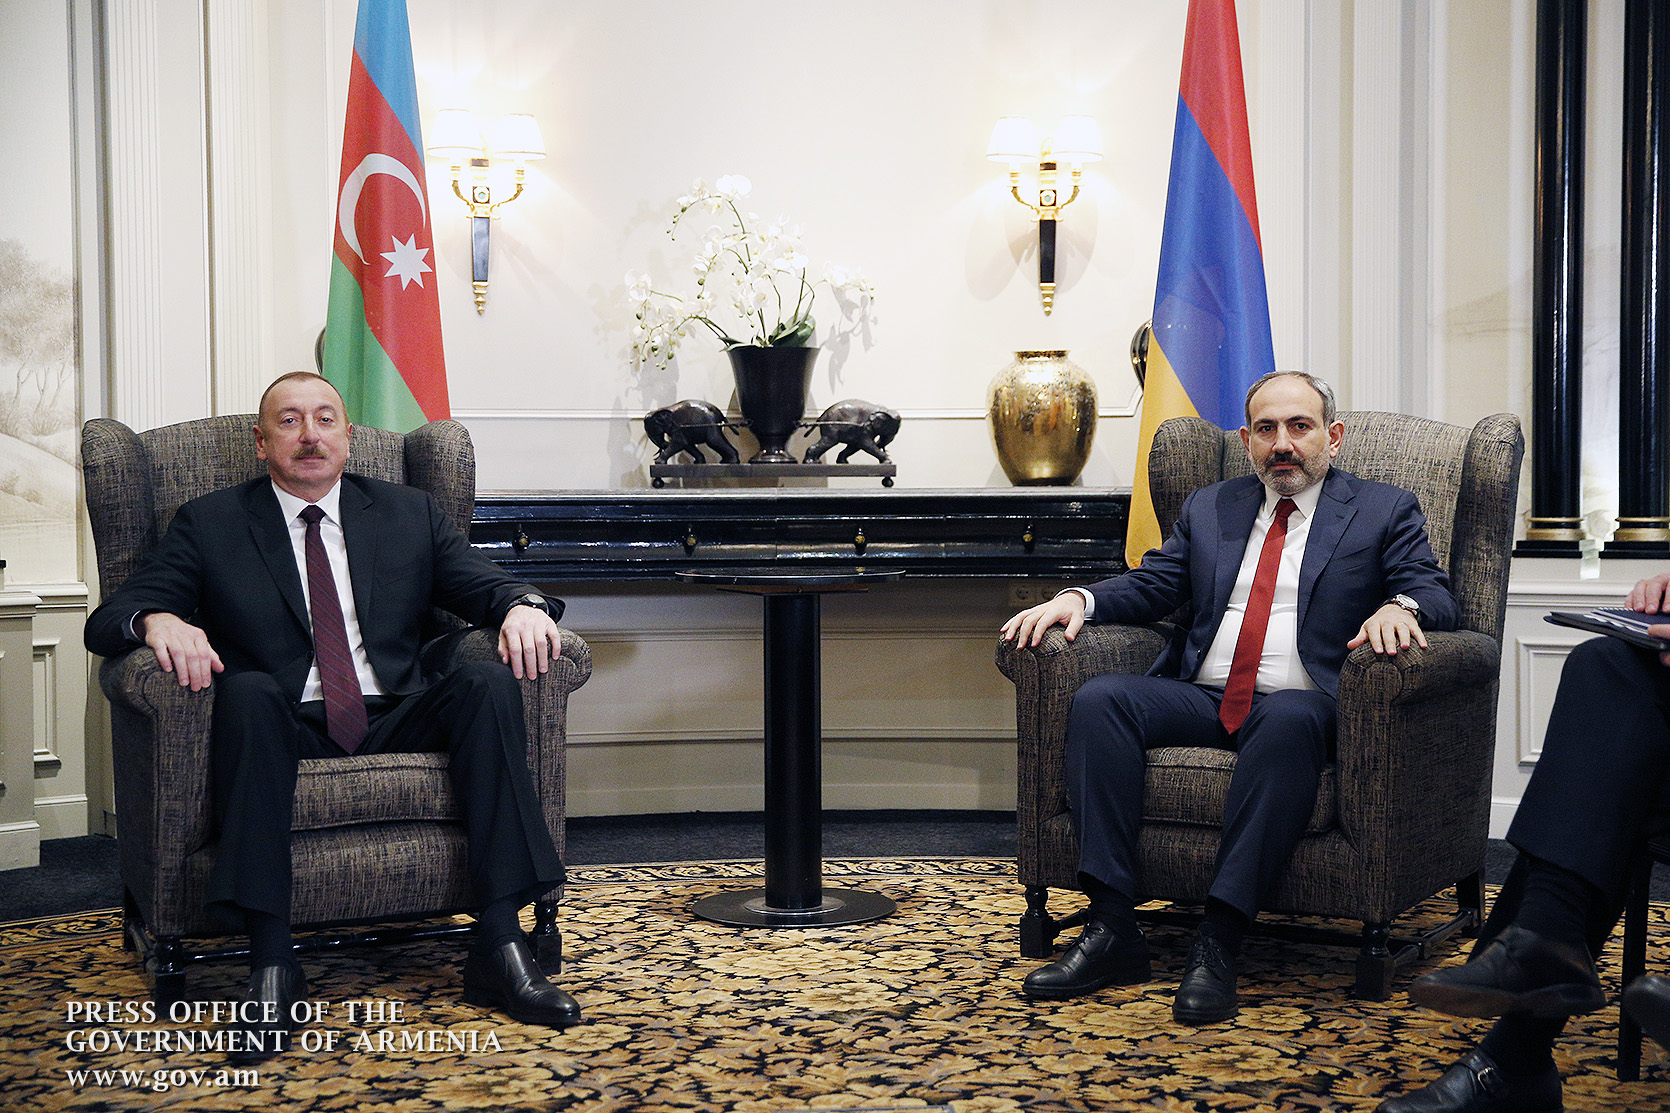 Пашинян не стал раскрывать скобок об атмосфере на переговорах с Азербайджаном